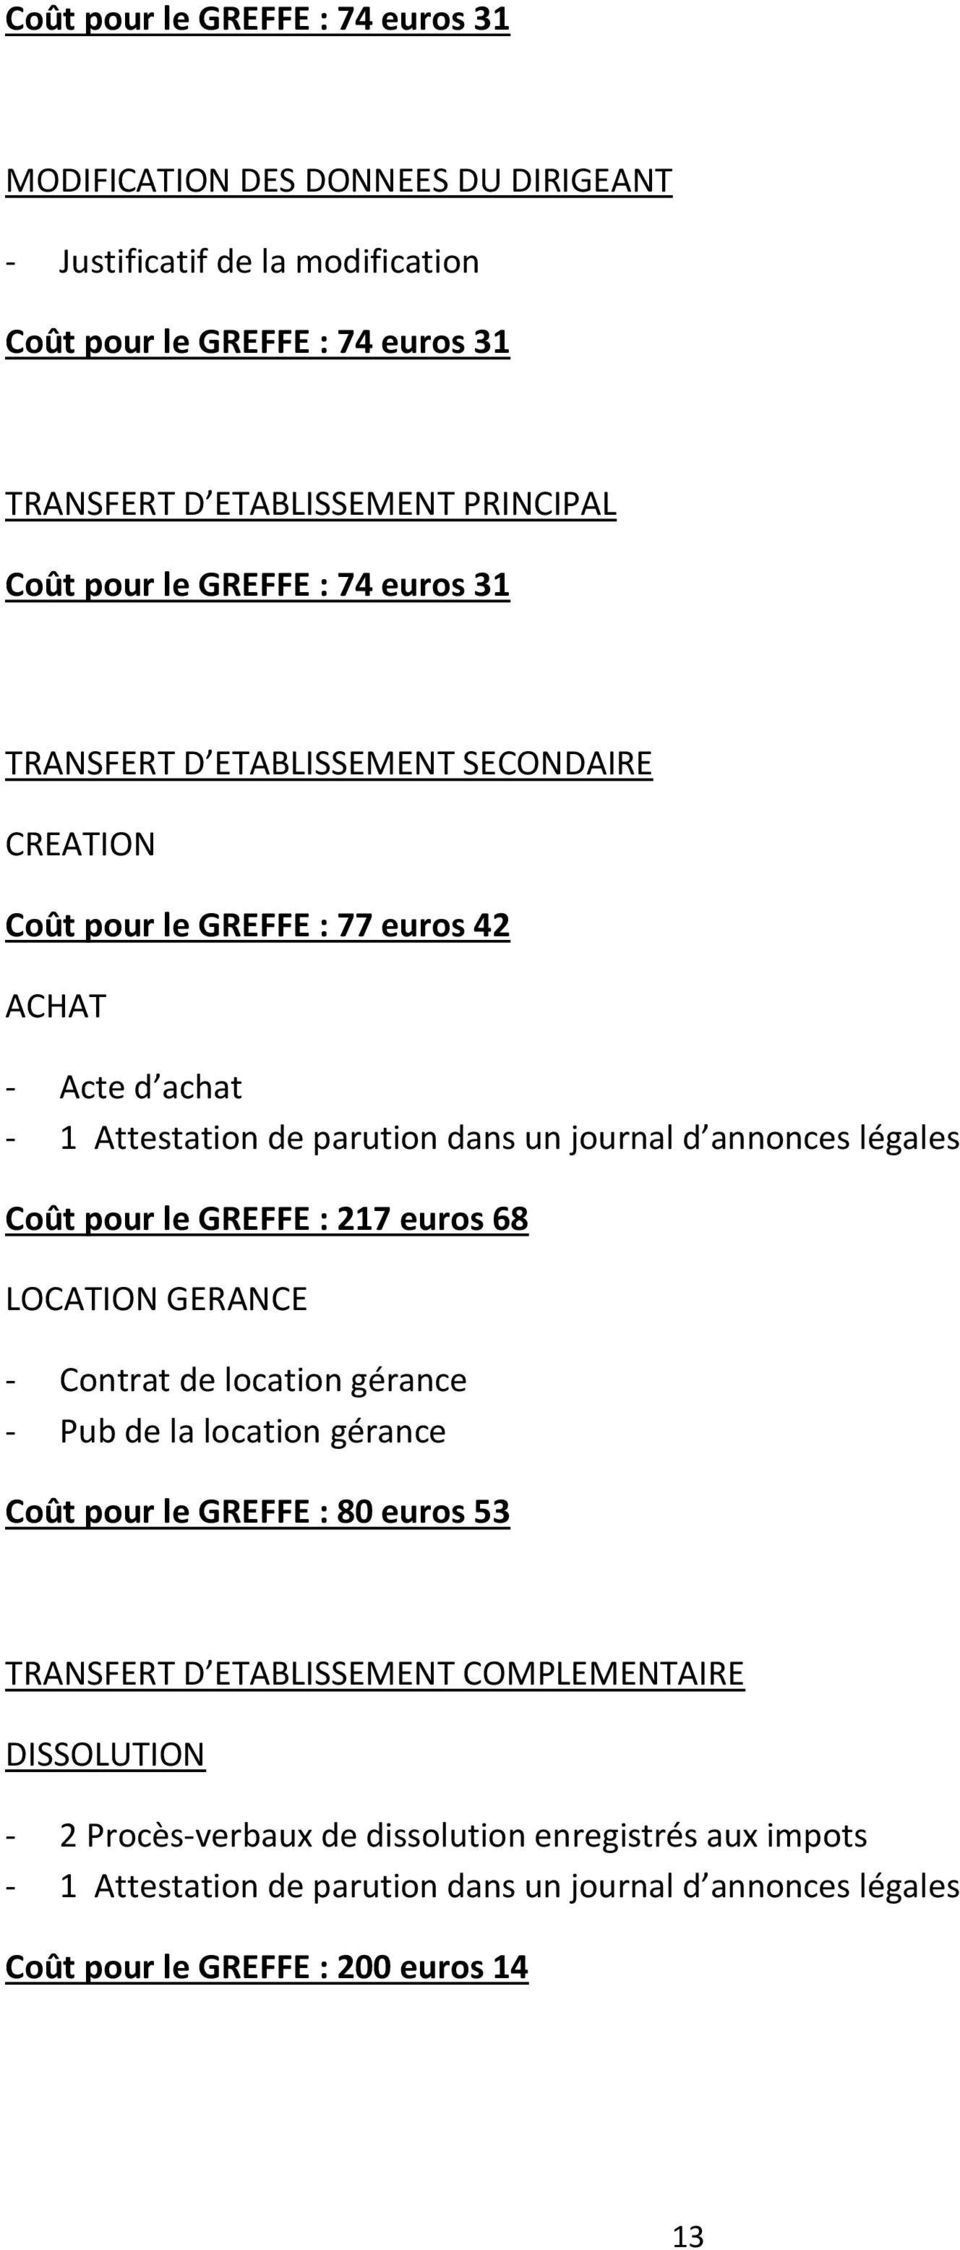 euros 42 ACHAT - Acte d achat Coût pour le GREFFE : 217 euros 68 LOCATION GERANCE - Contrat de location gérance - Pub de la location gérance